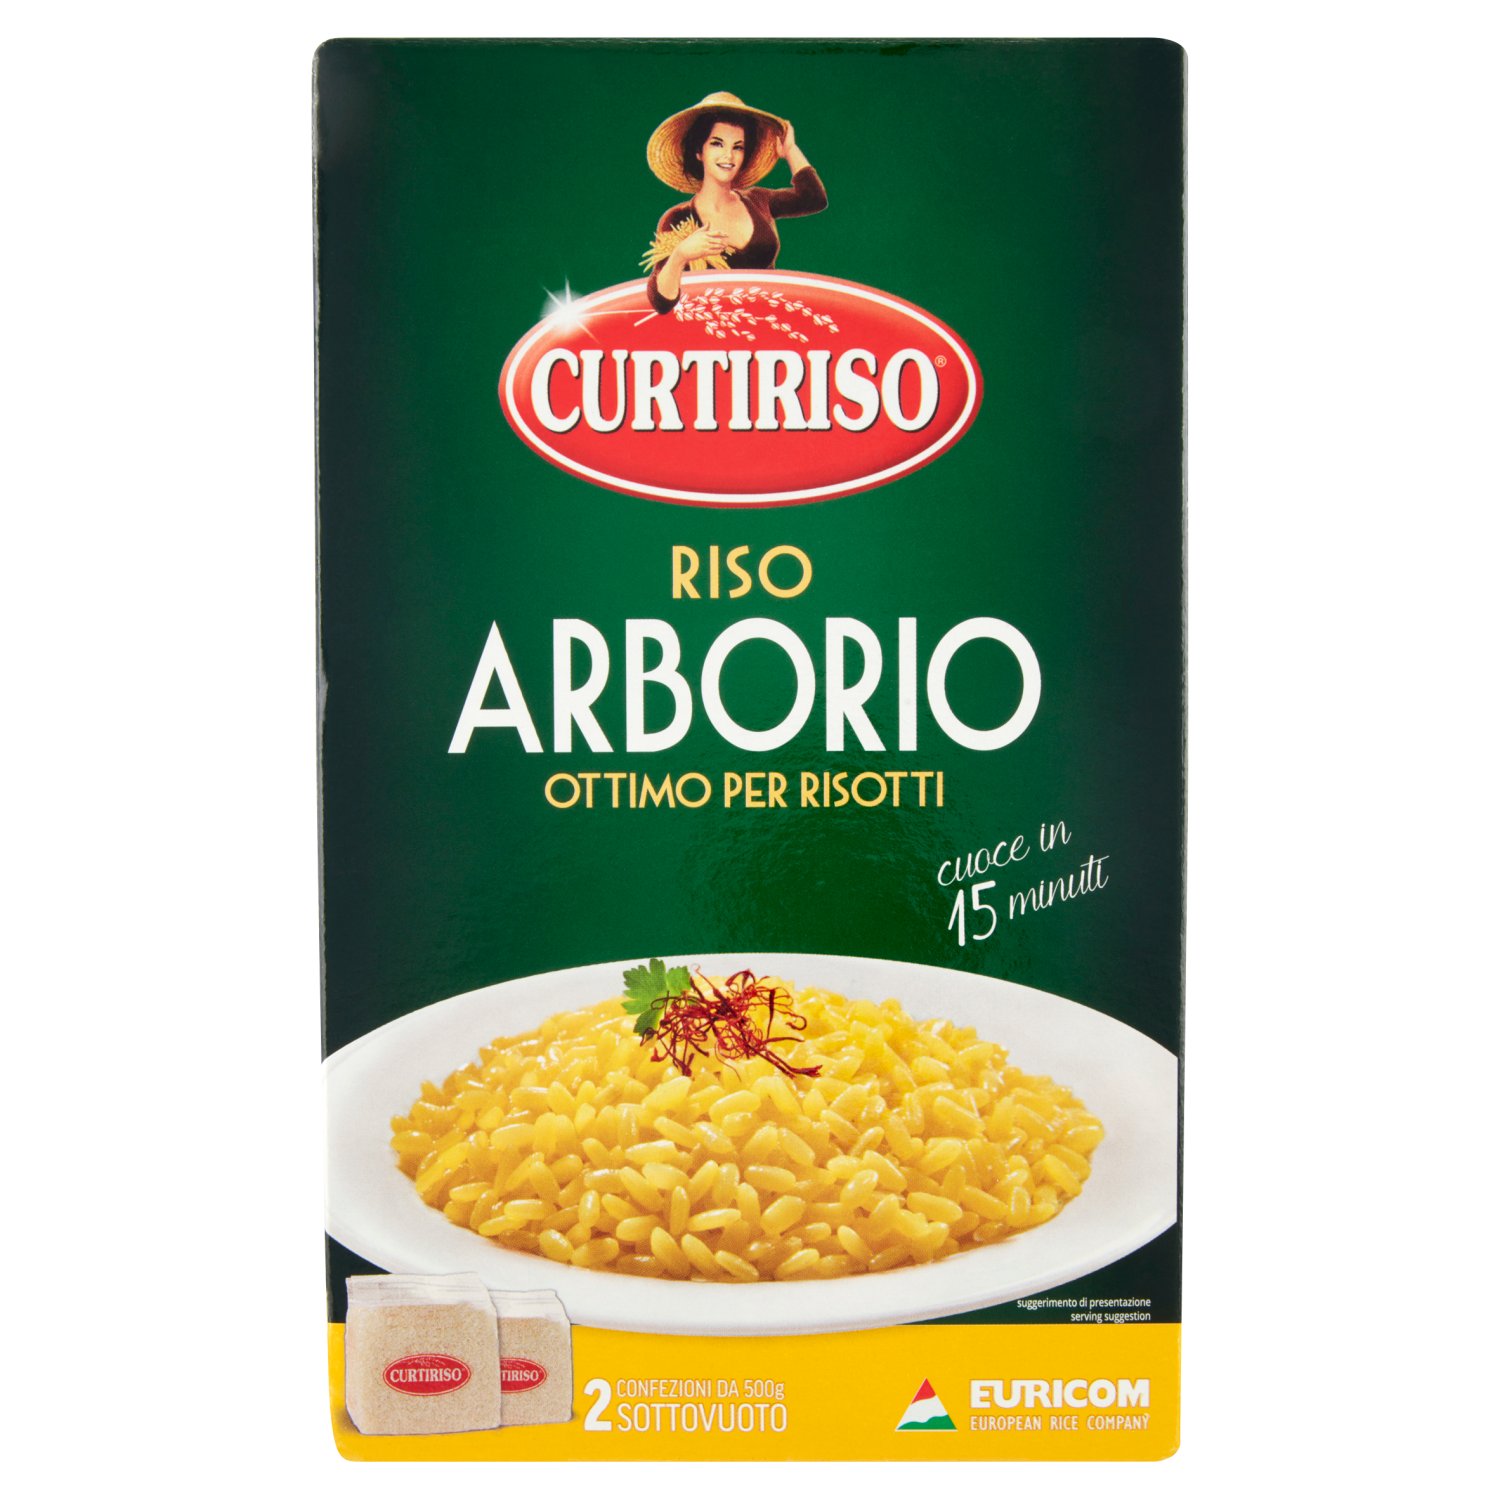 CURTIRISO RISO ARBORIO 1Kg